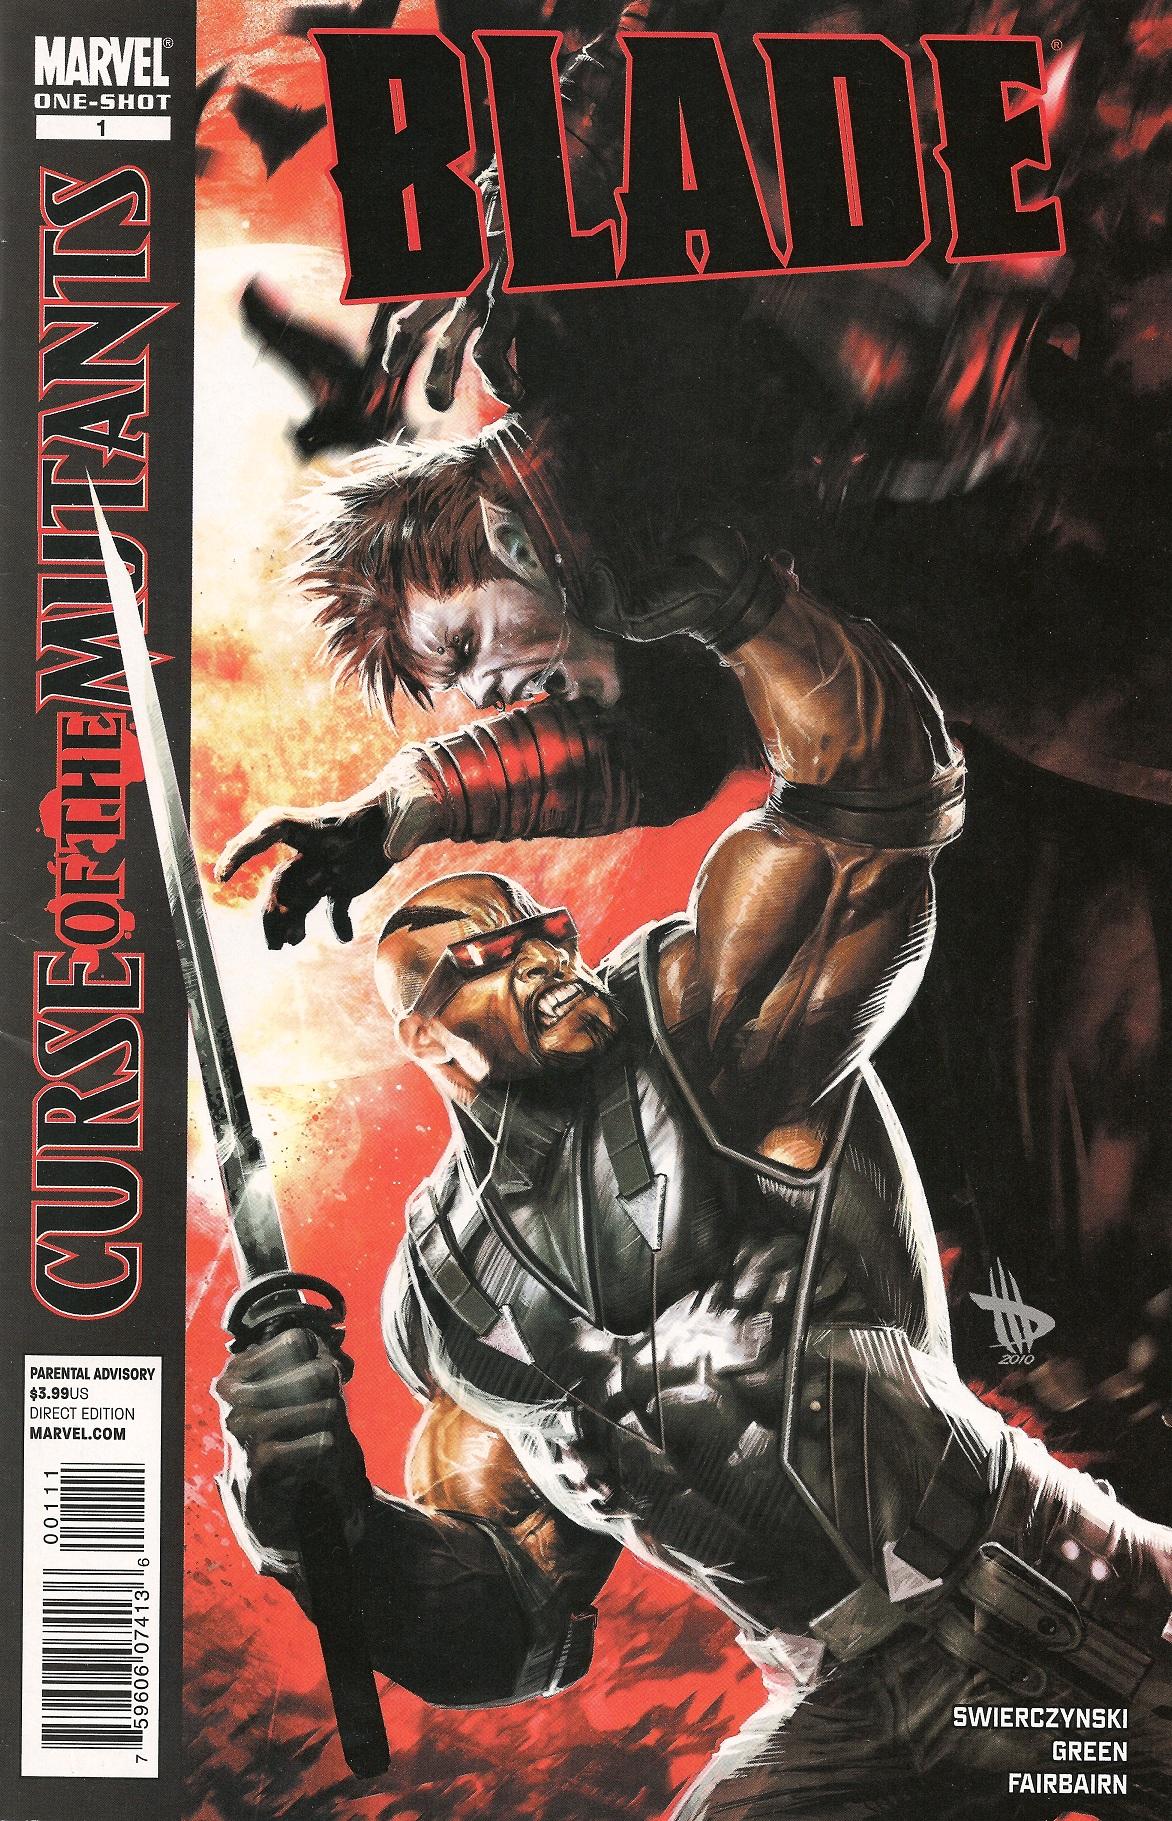 X-Men: Curse of the Mutants - Blade Vol. 1 #1